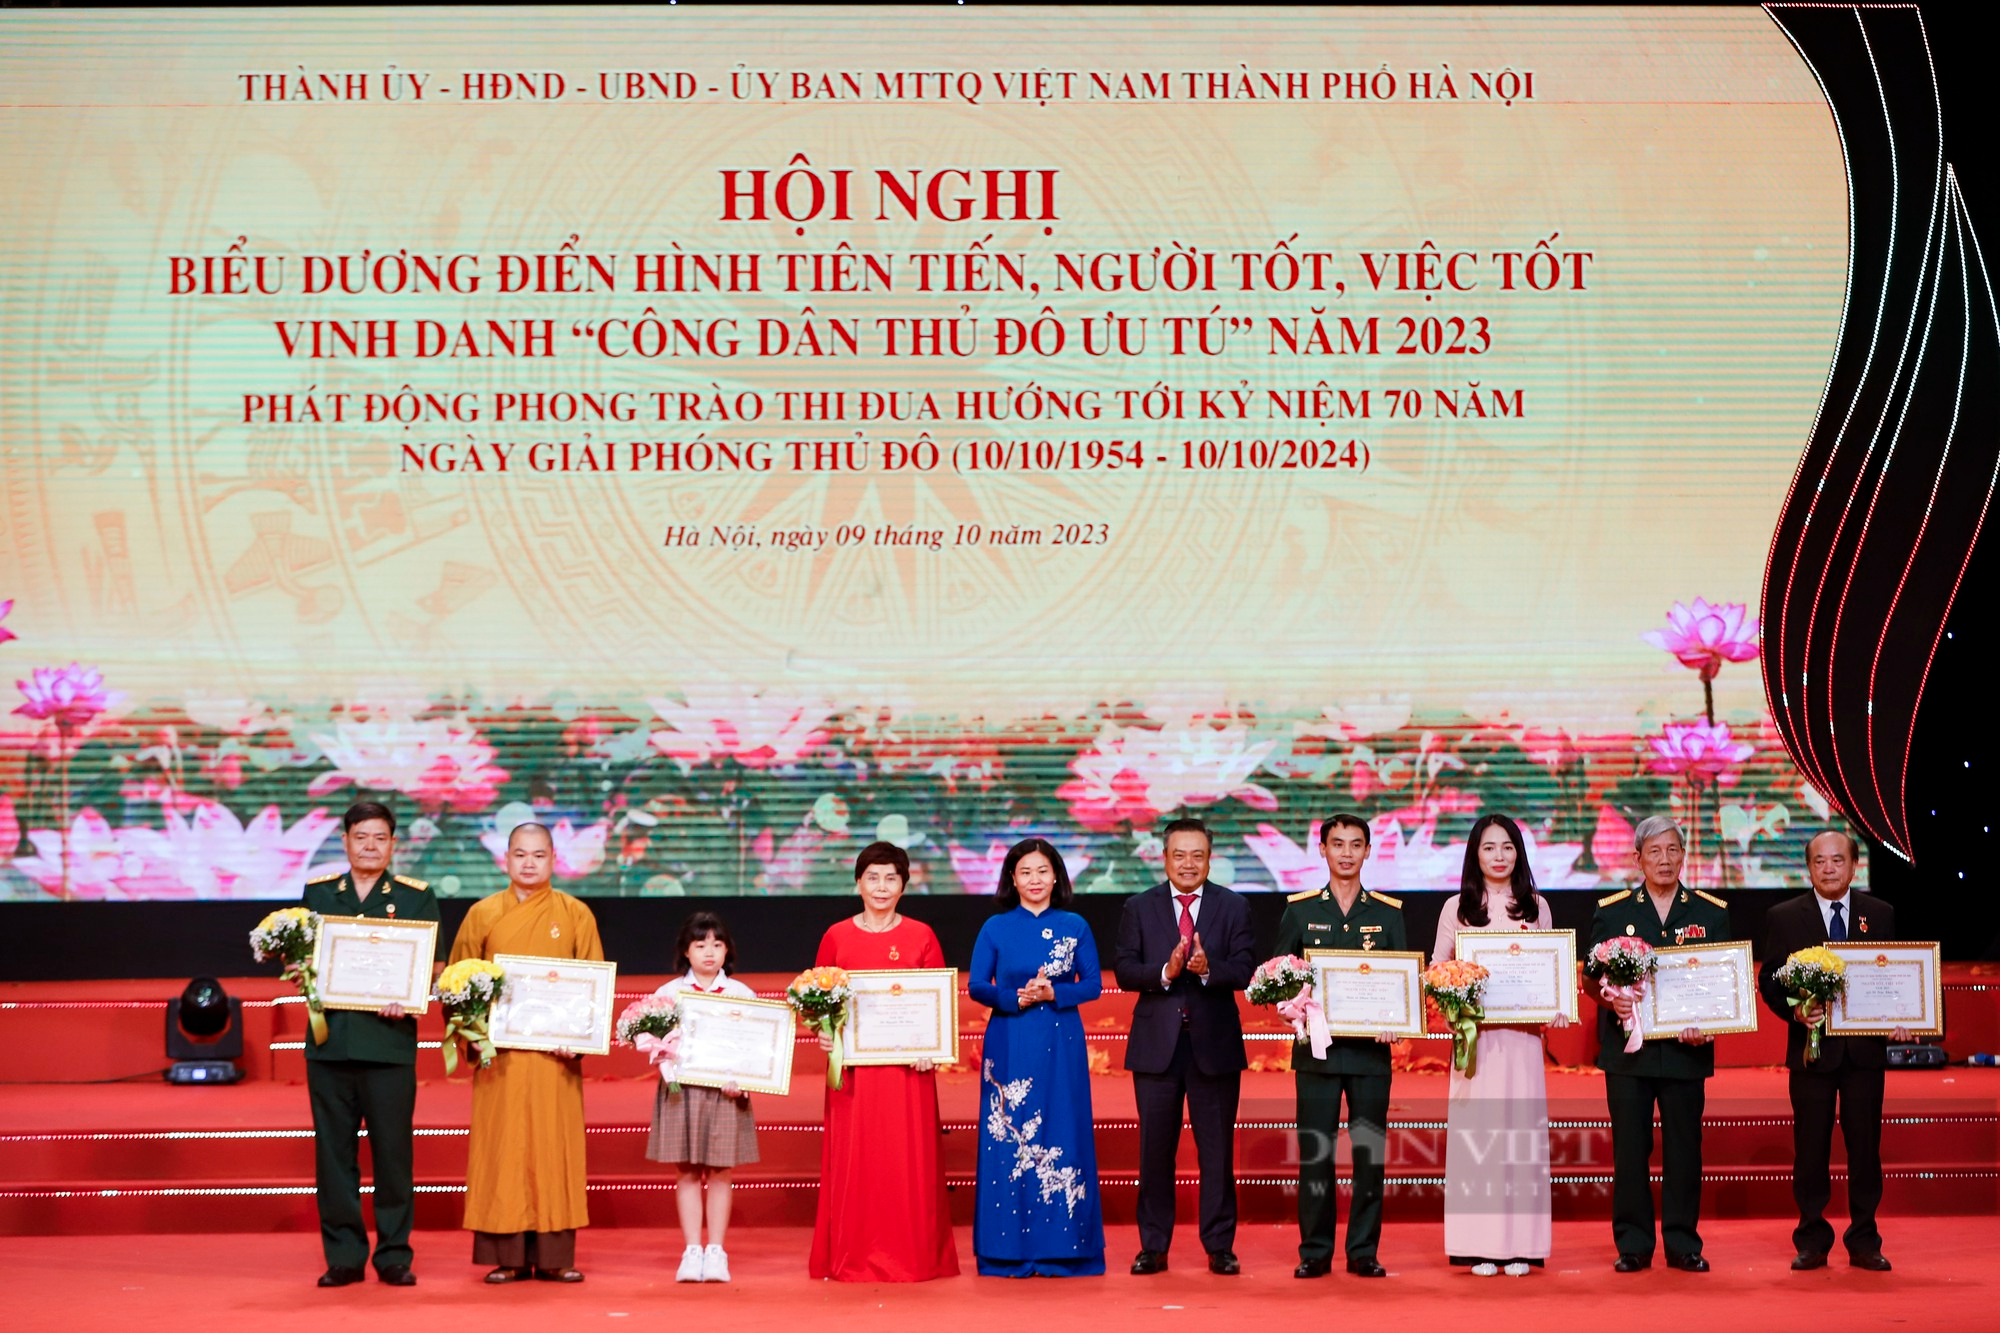 Hình ảnh Thủ tướng Phạm Minh Chính dự Hội nghị vinh danh Công dân Thủ đô Ưu tú năm 2023 - Ảnh 11.